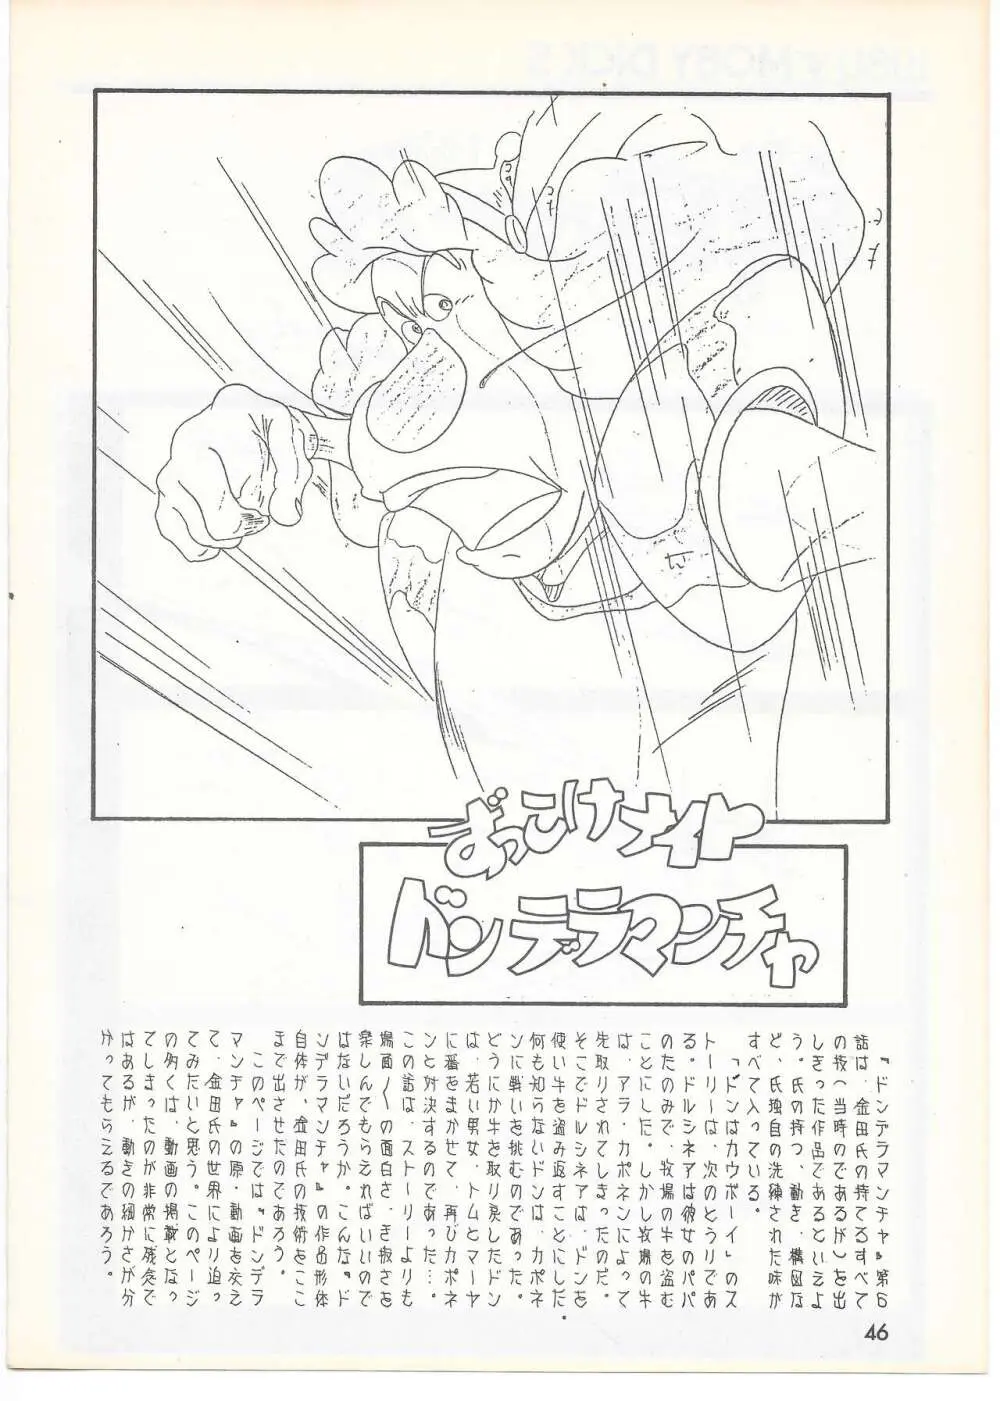 THE ANIMATOR 1 金田伊功特集号 45ページ